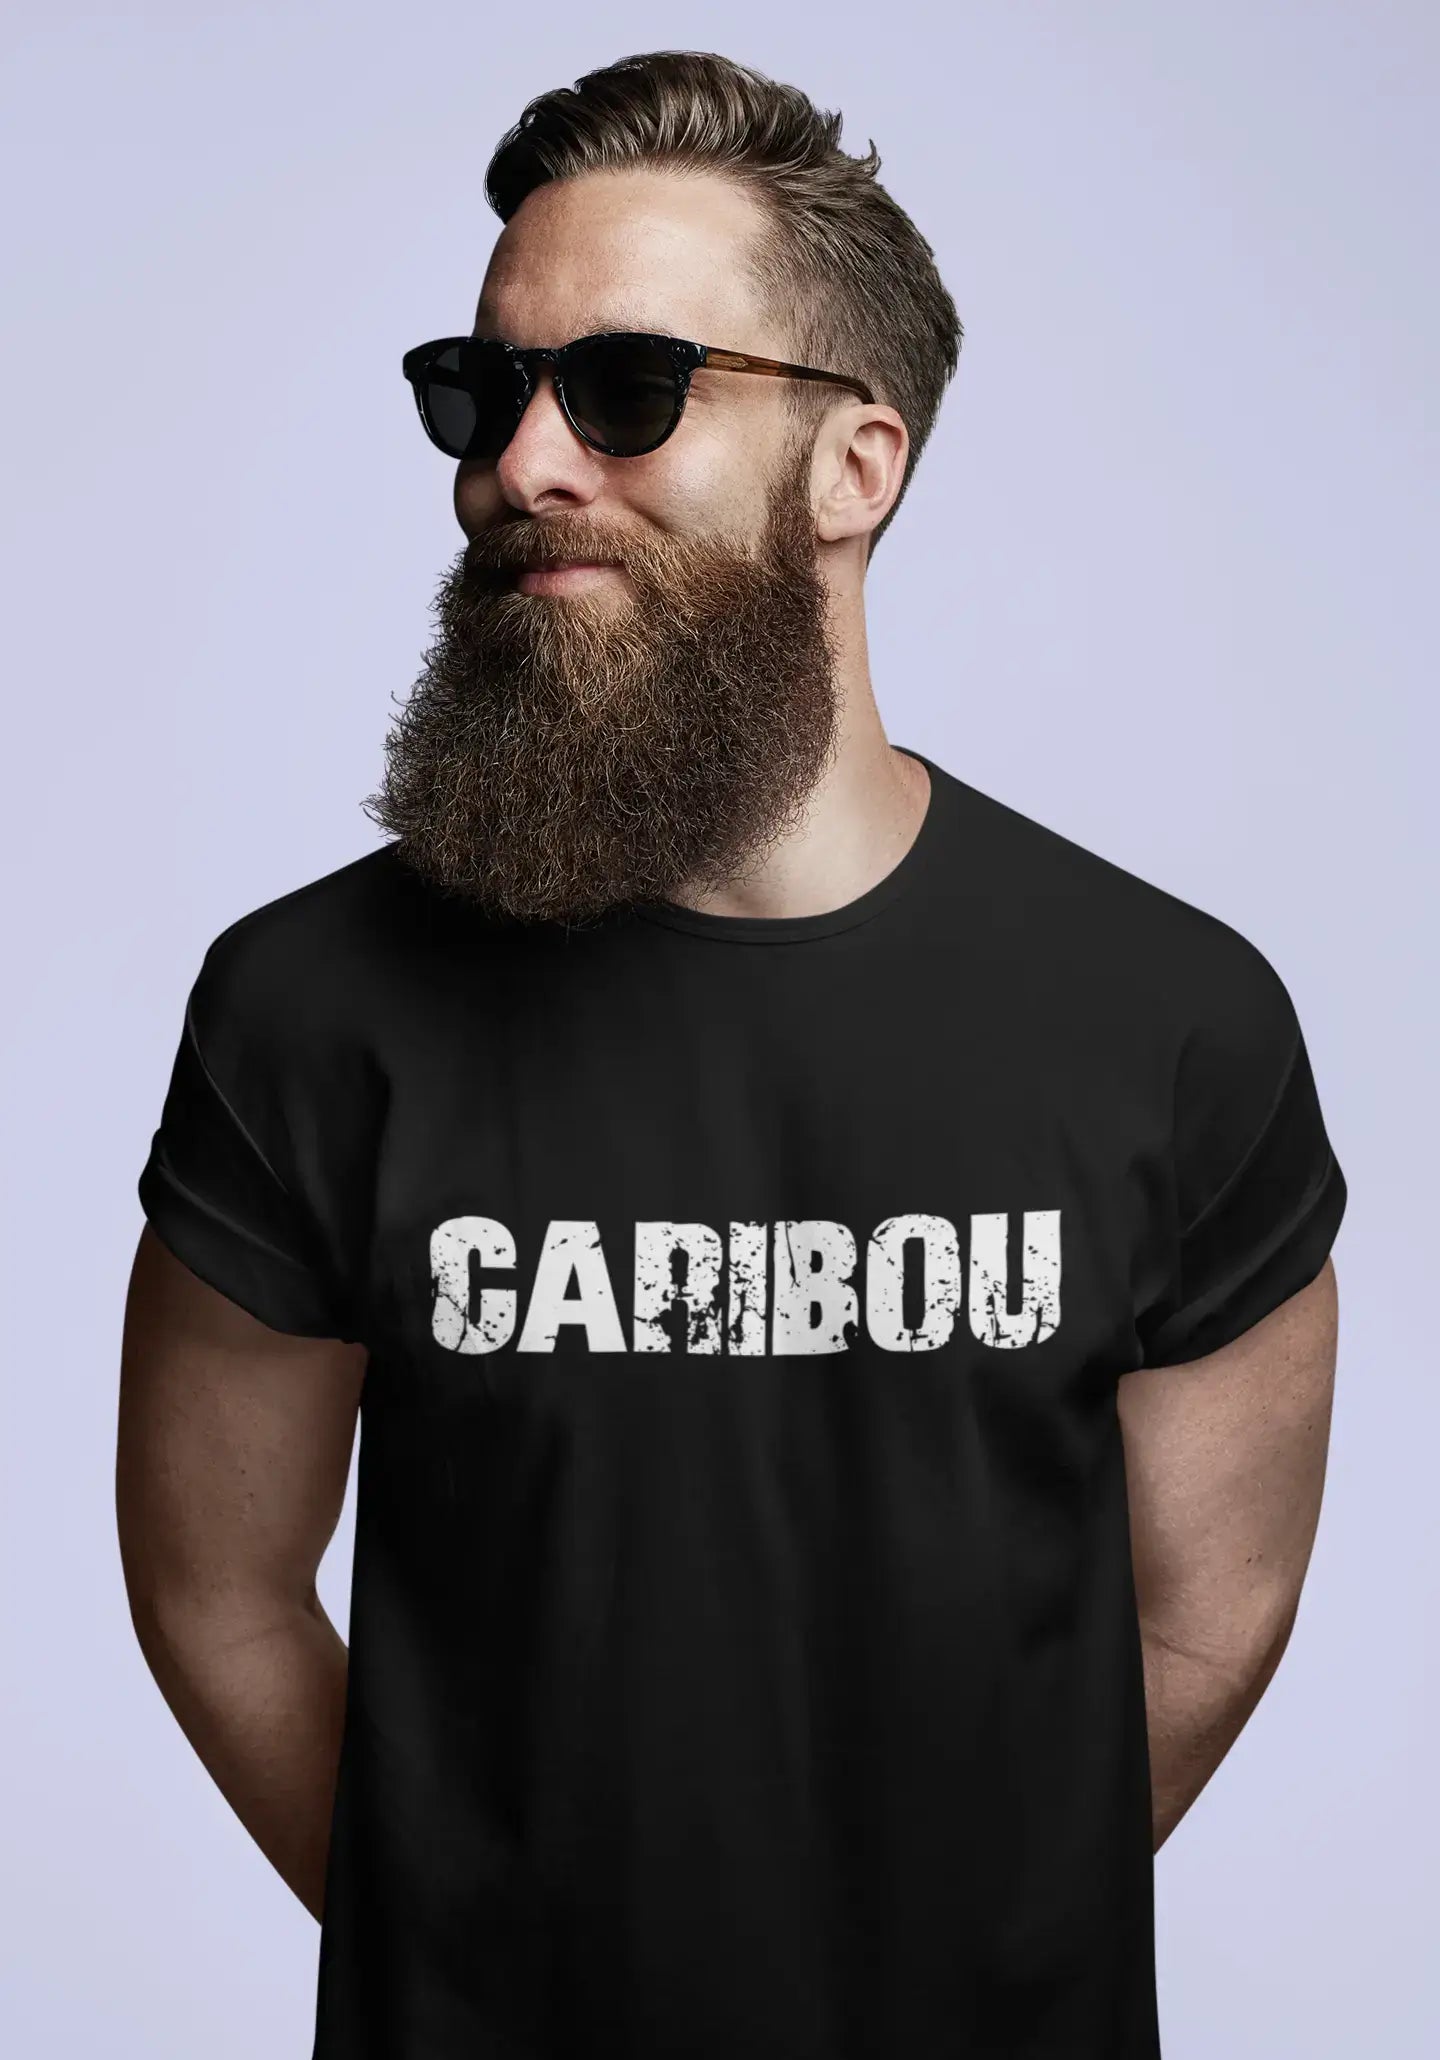 Homme T Shirt Graphique Imprimé Vintage Tee Caribou